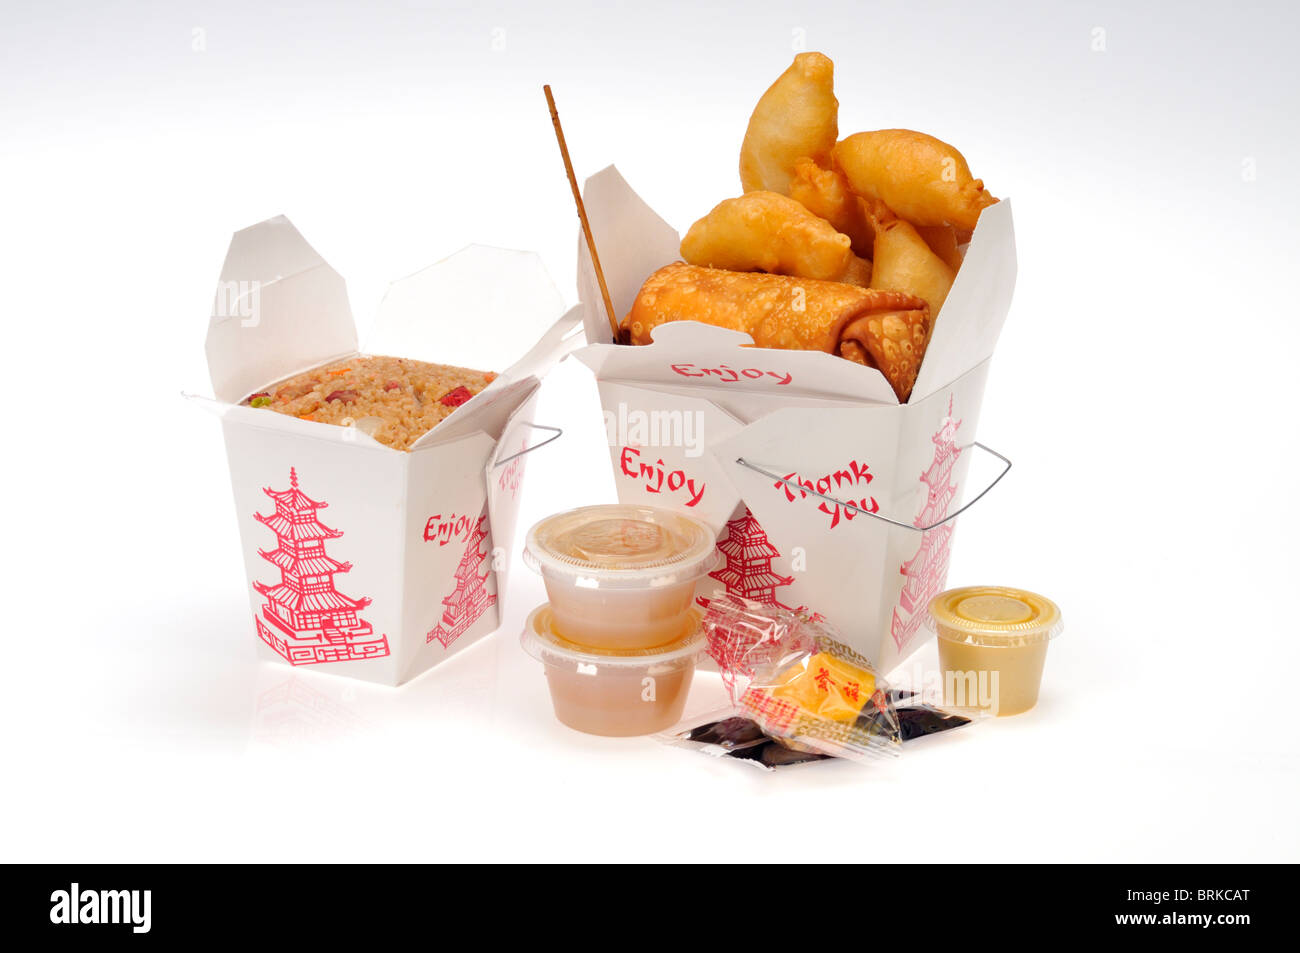 Sacar cajas de comida china de cerdo, el arroz y el pollo frito de los dedos con un eggroll sobre fondo blanco. Foto de stock